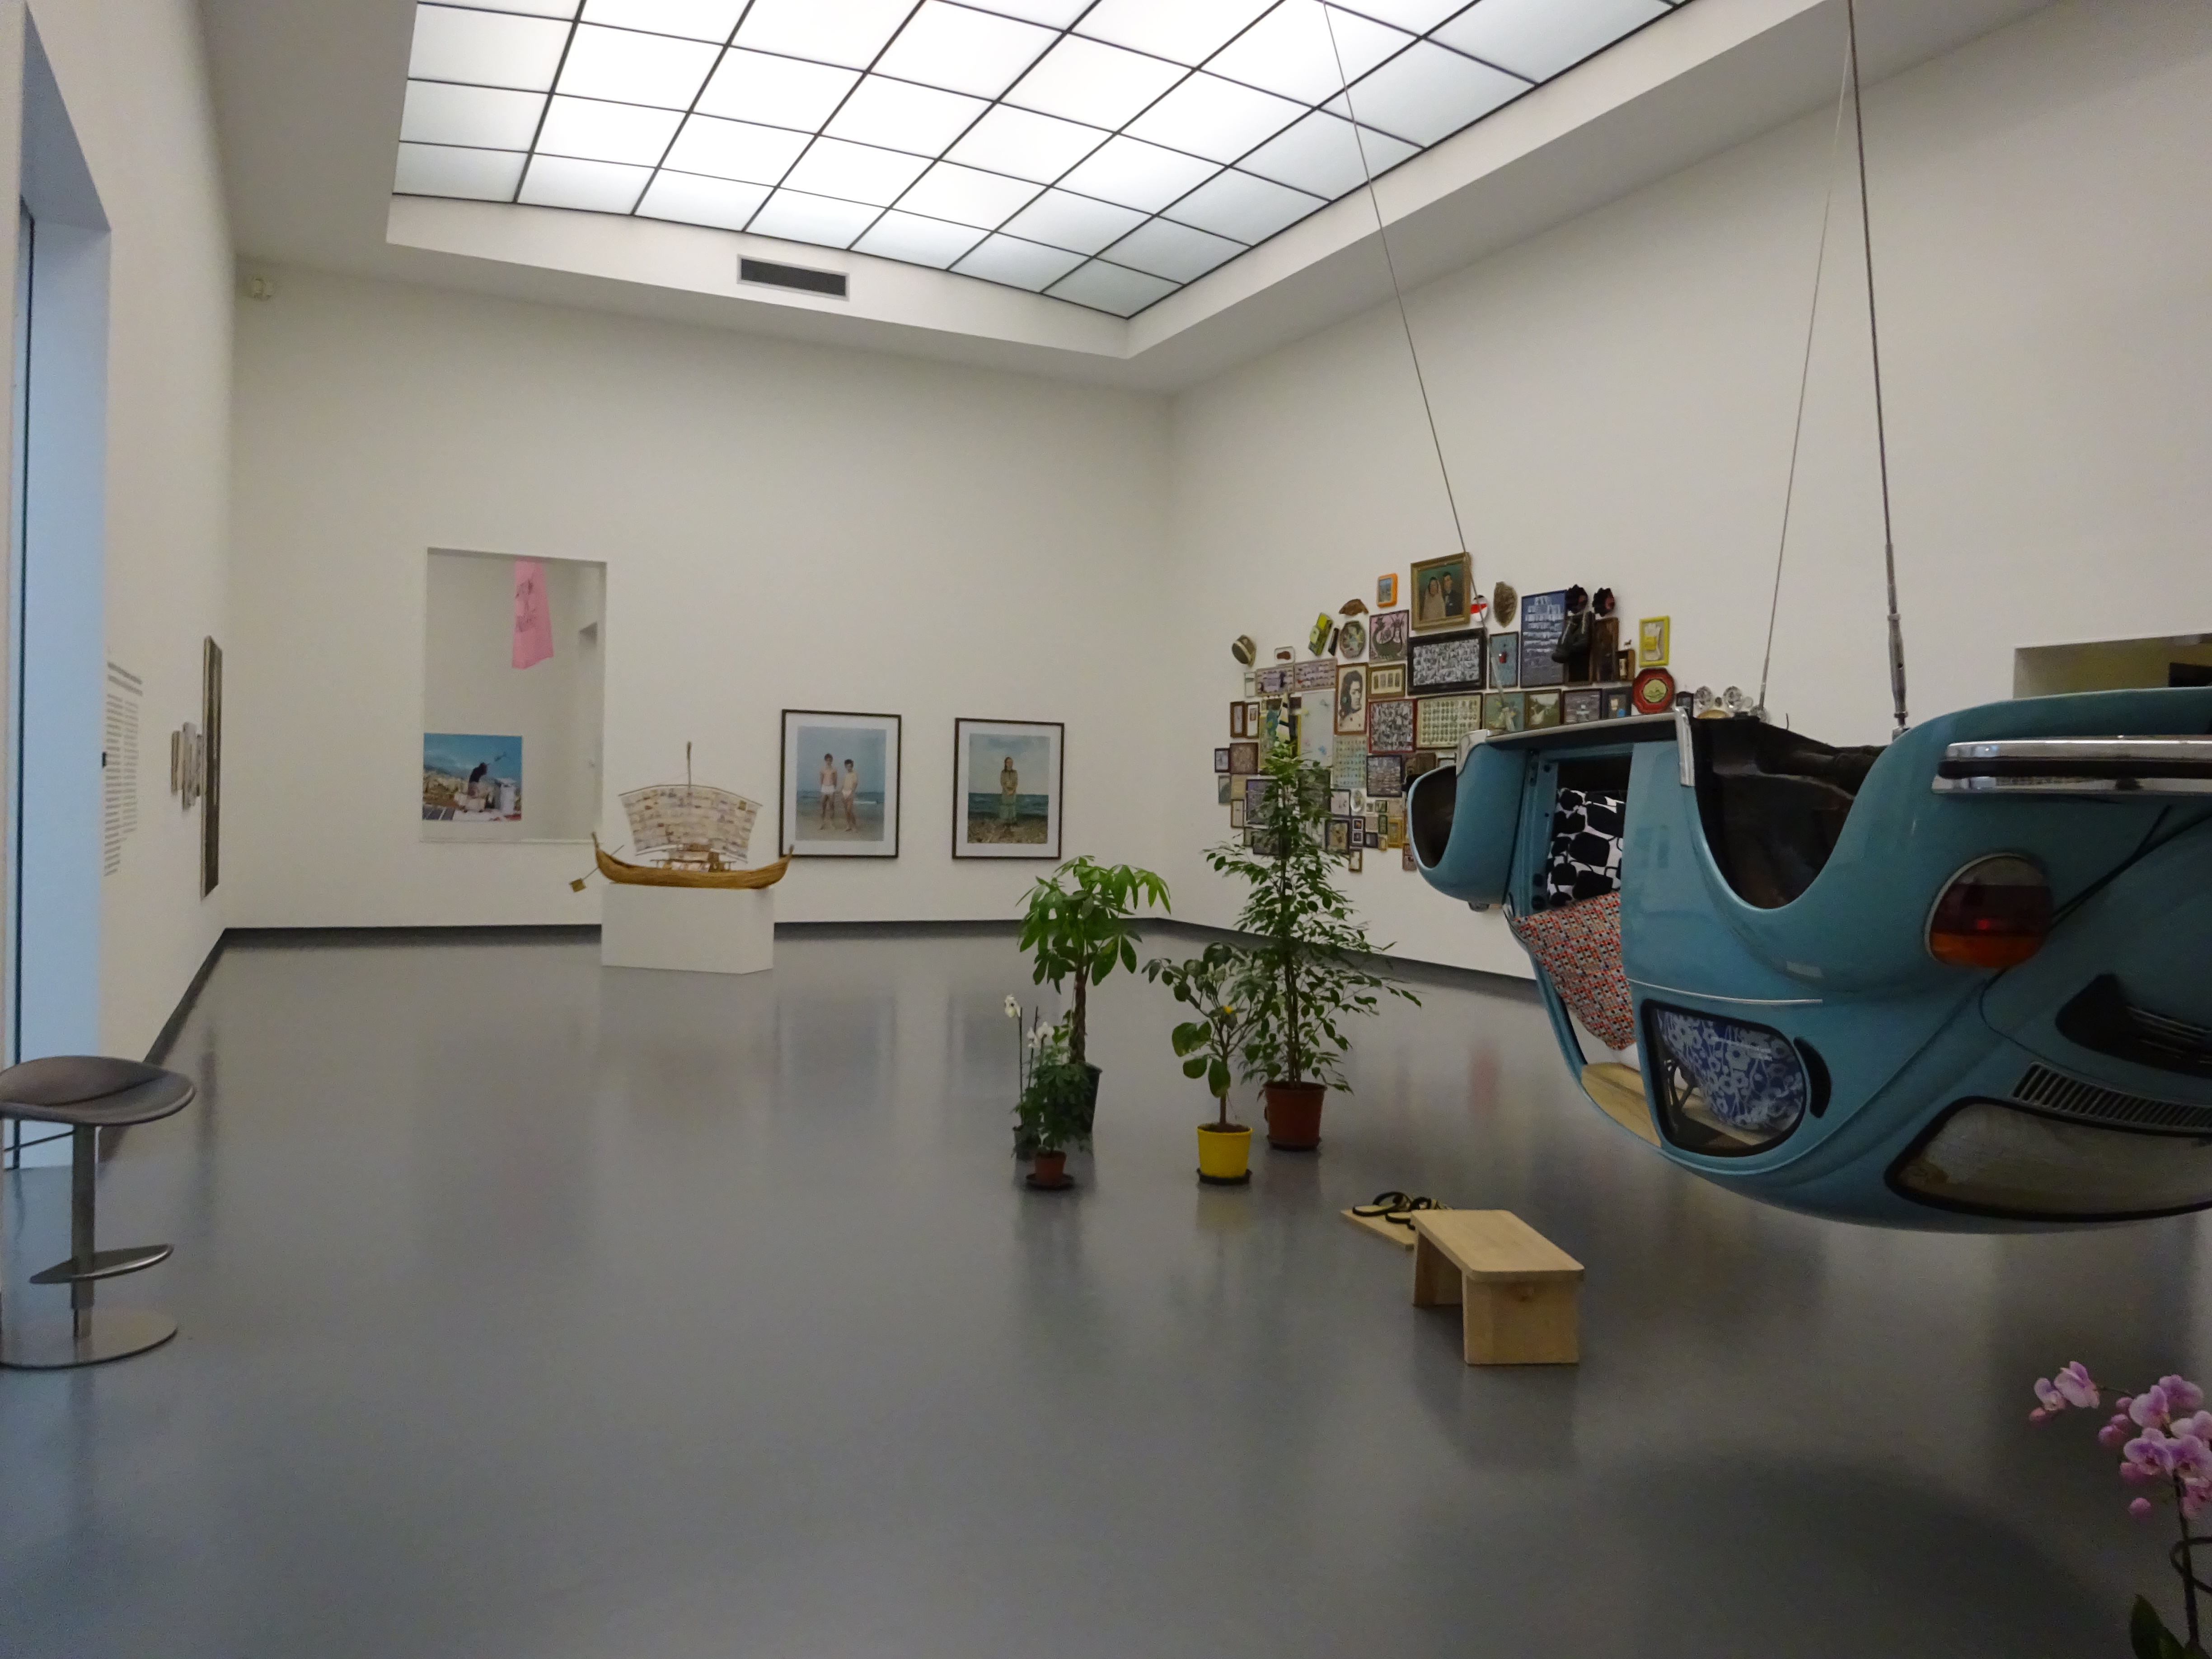 Zaaloverzicht tentoonstelling Er was eens… de collectie nu in het Van Abbemuseum met de werken van Rineke Dijkstra. Rechts in beeld de Volkswagen van Kusolwong en daarachter op de muur de installatie Self-Heterotopia van Alptekin.